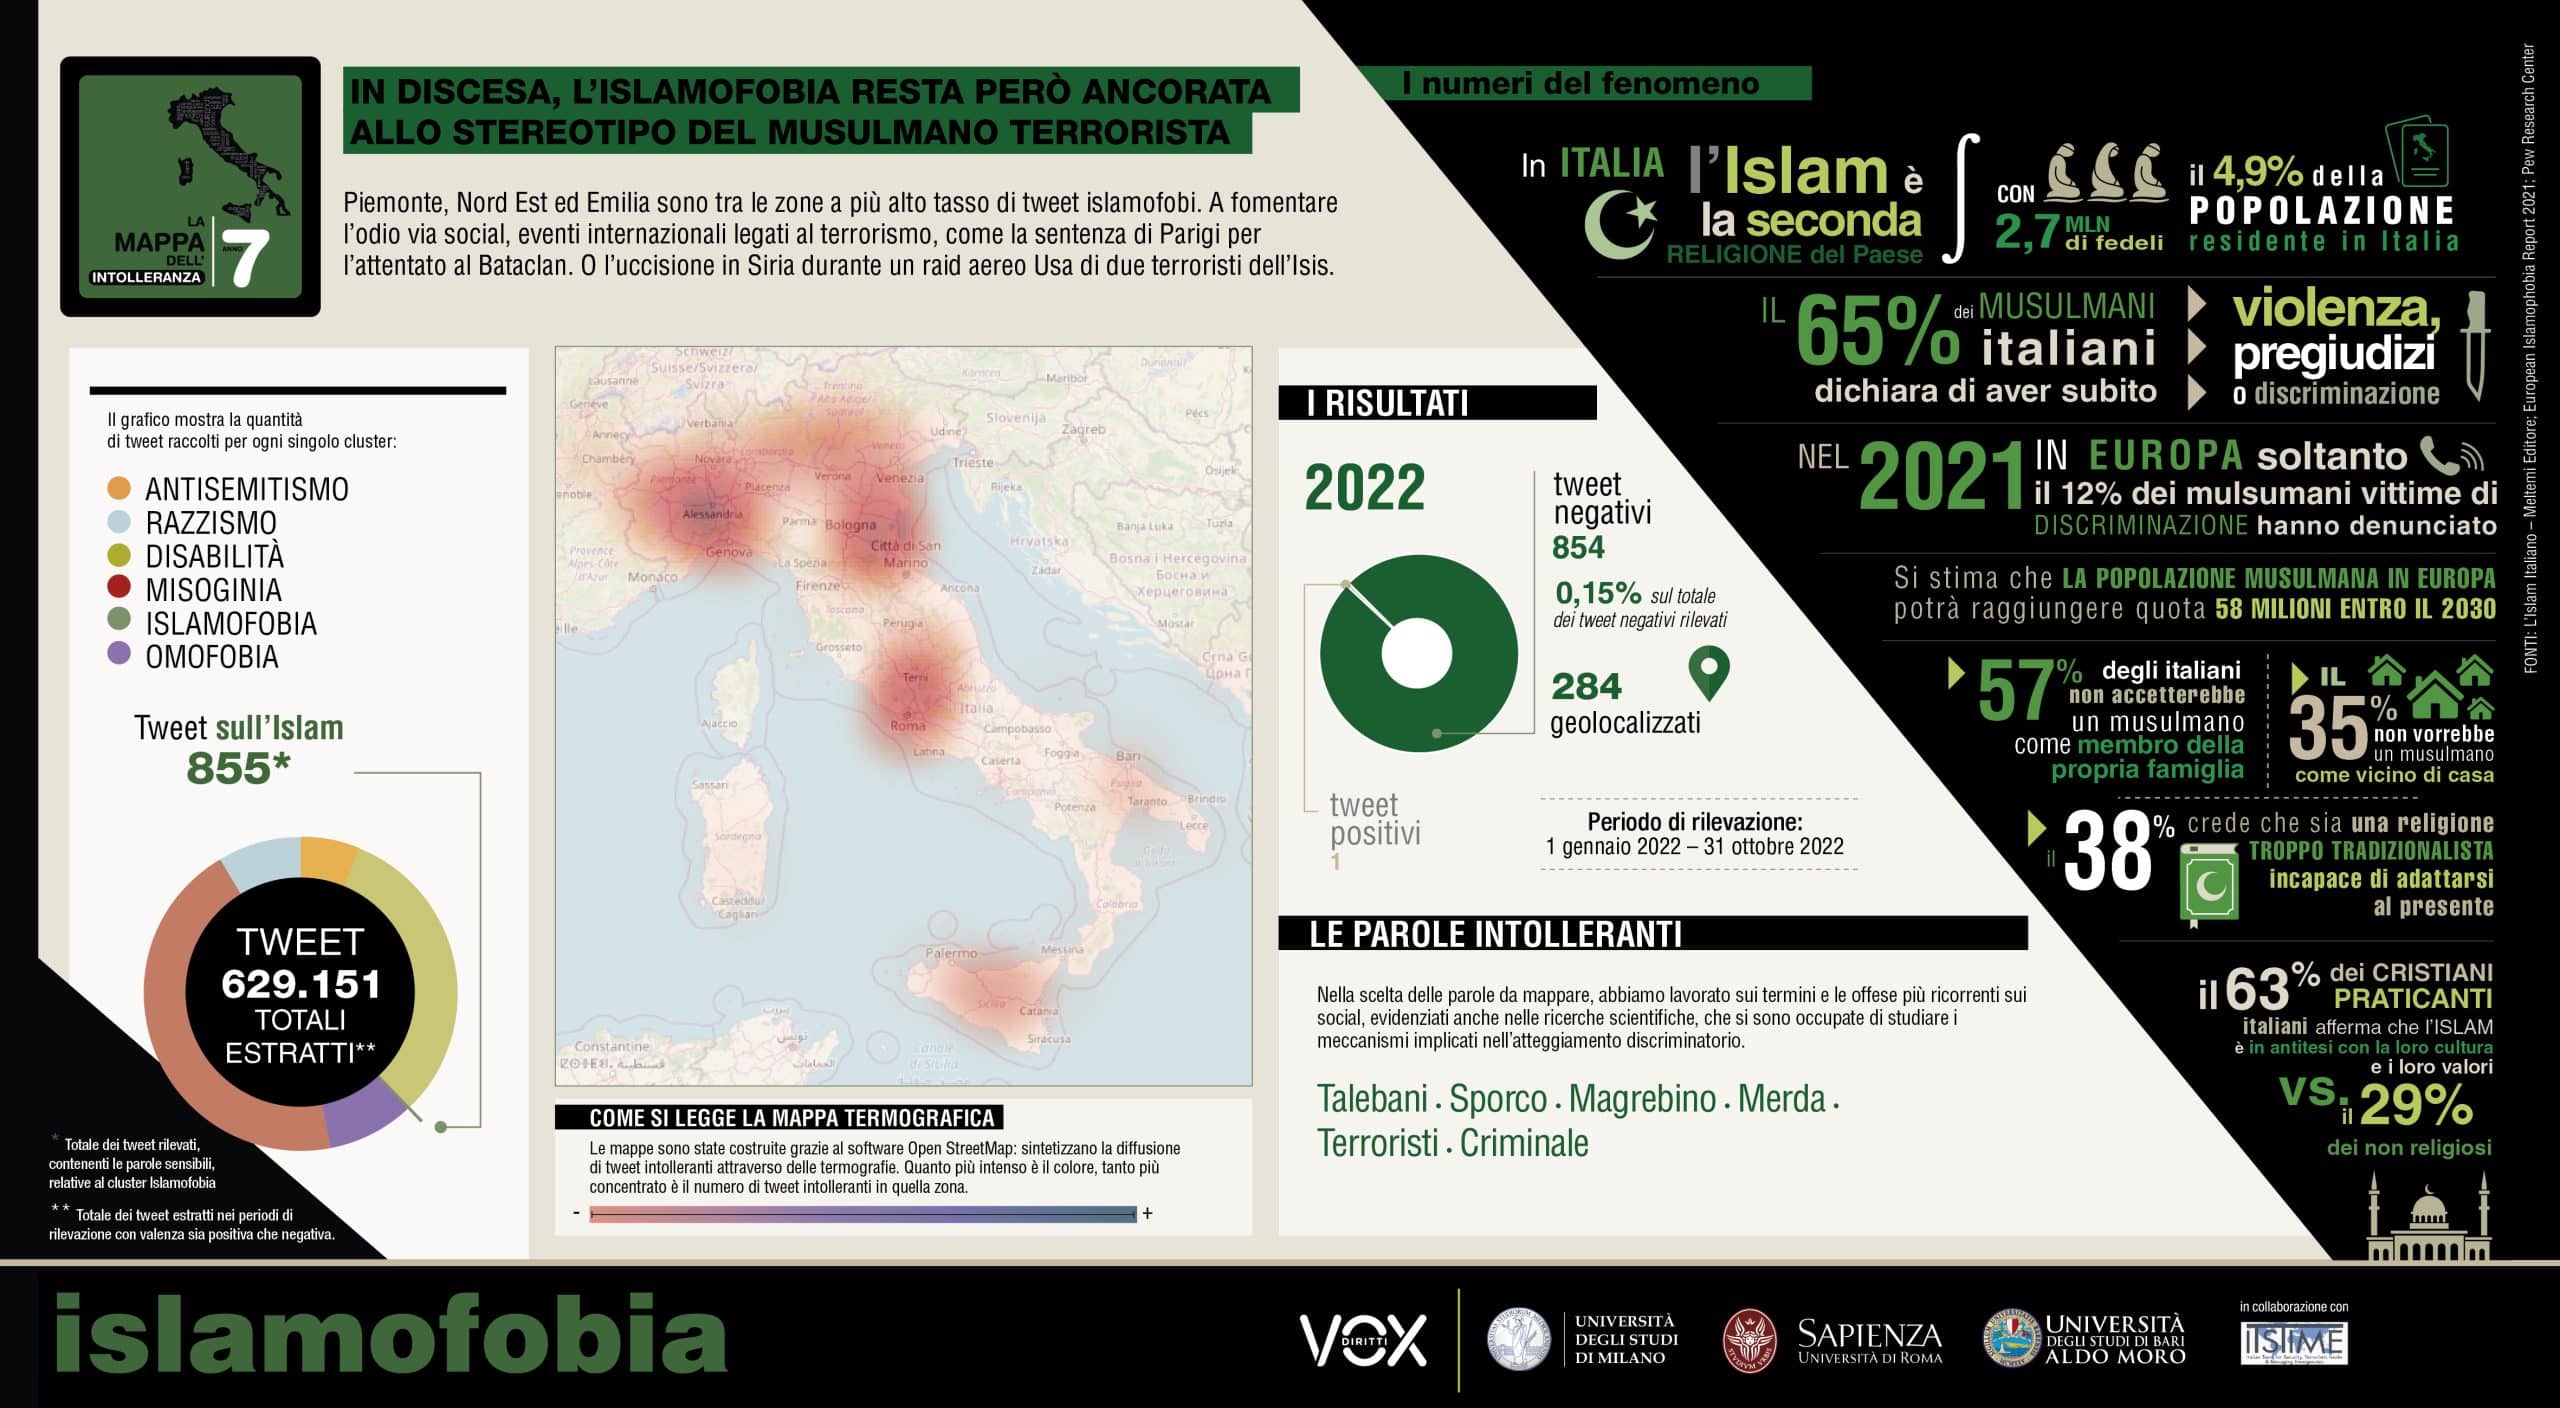 La mappa di Vox in relazione all'islamofobia